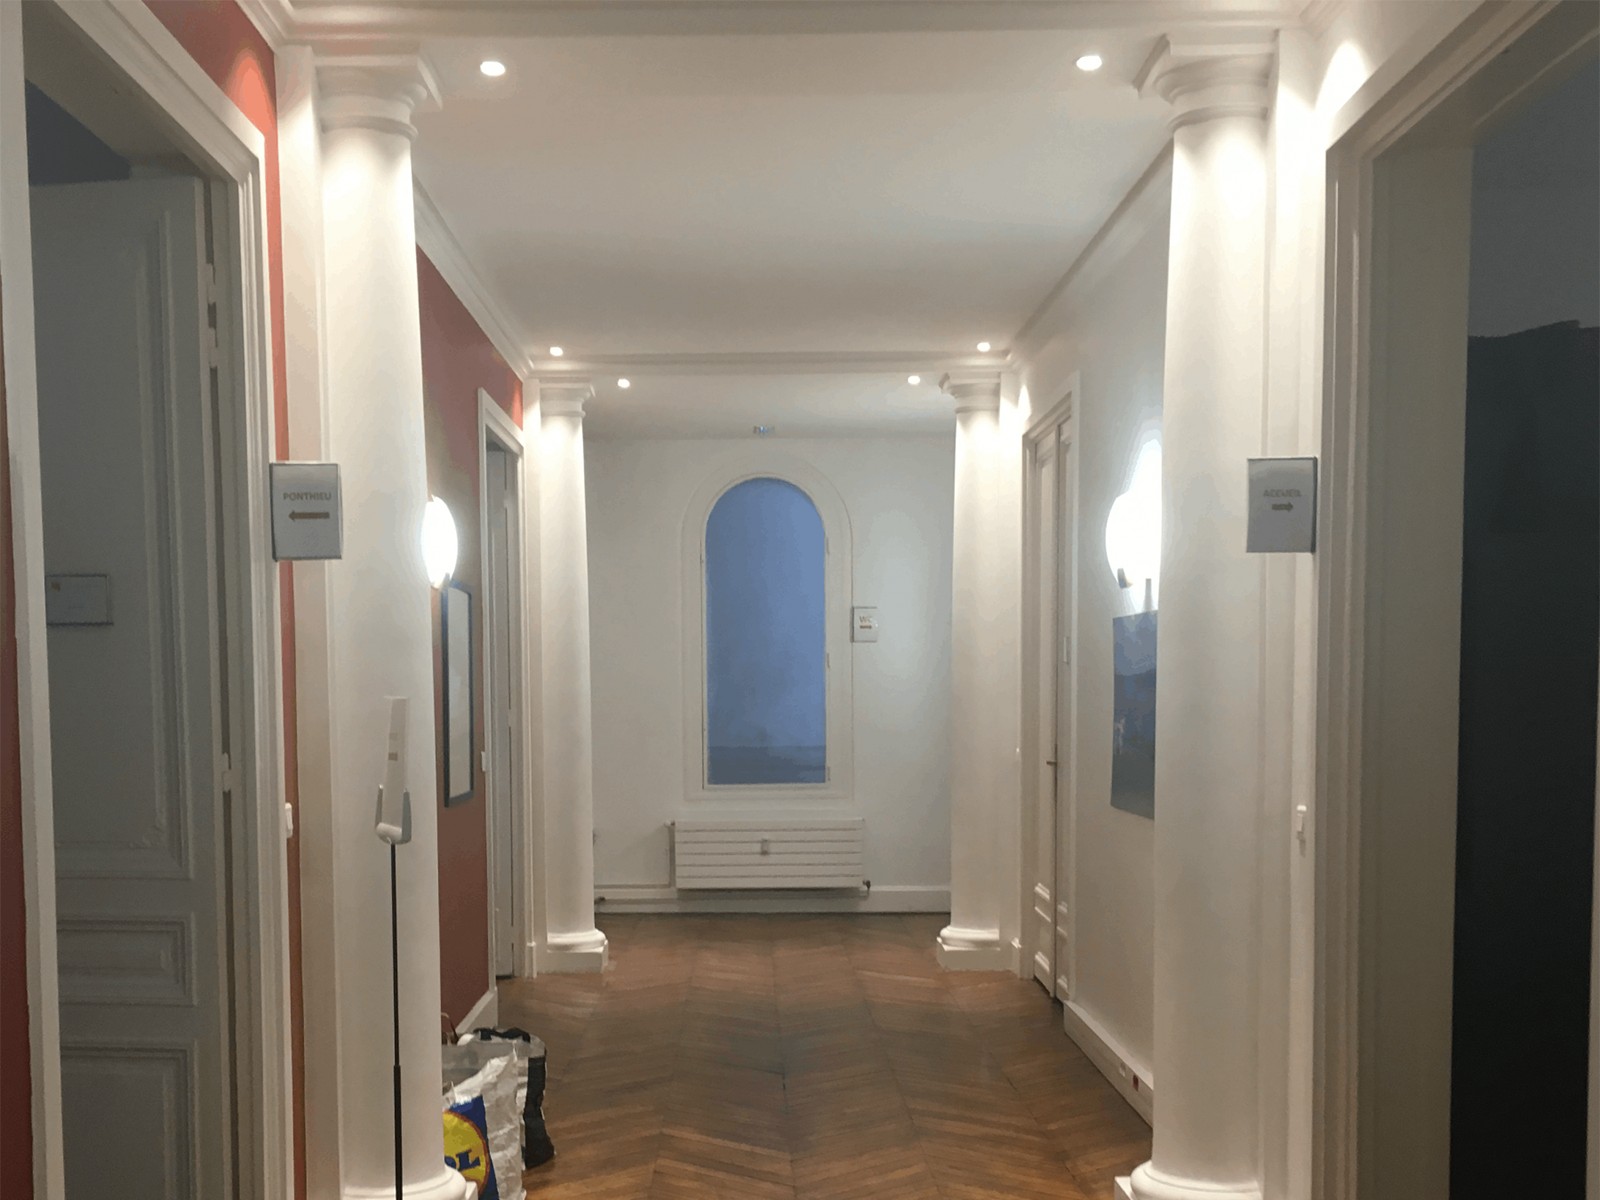 Avant-decoration-couloir11-e1523871600857